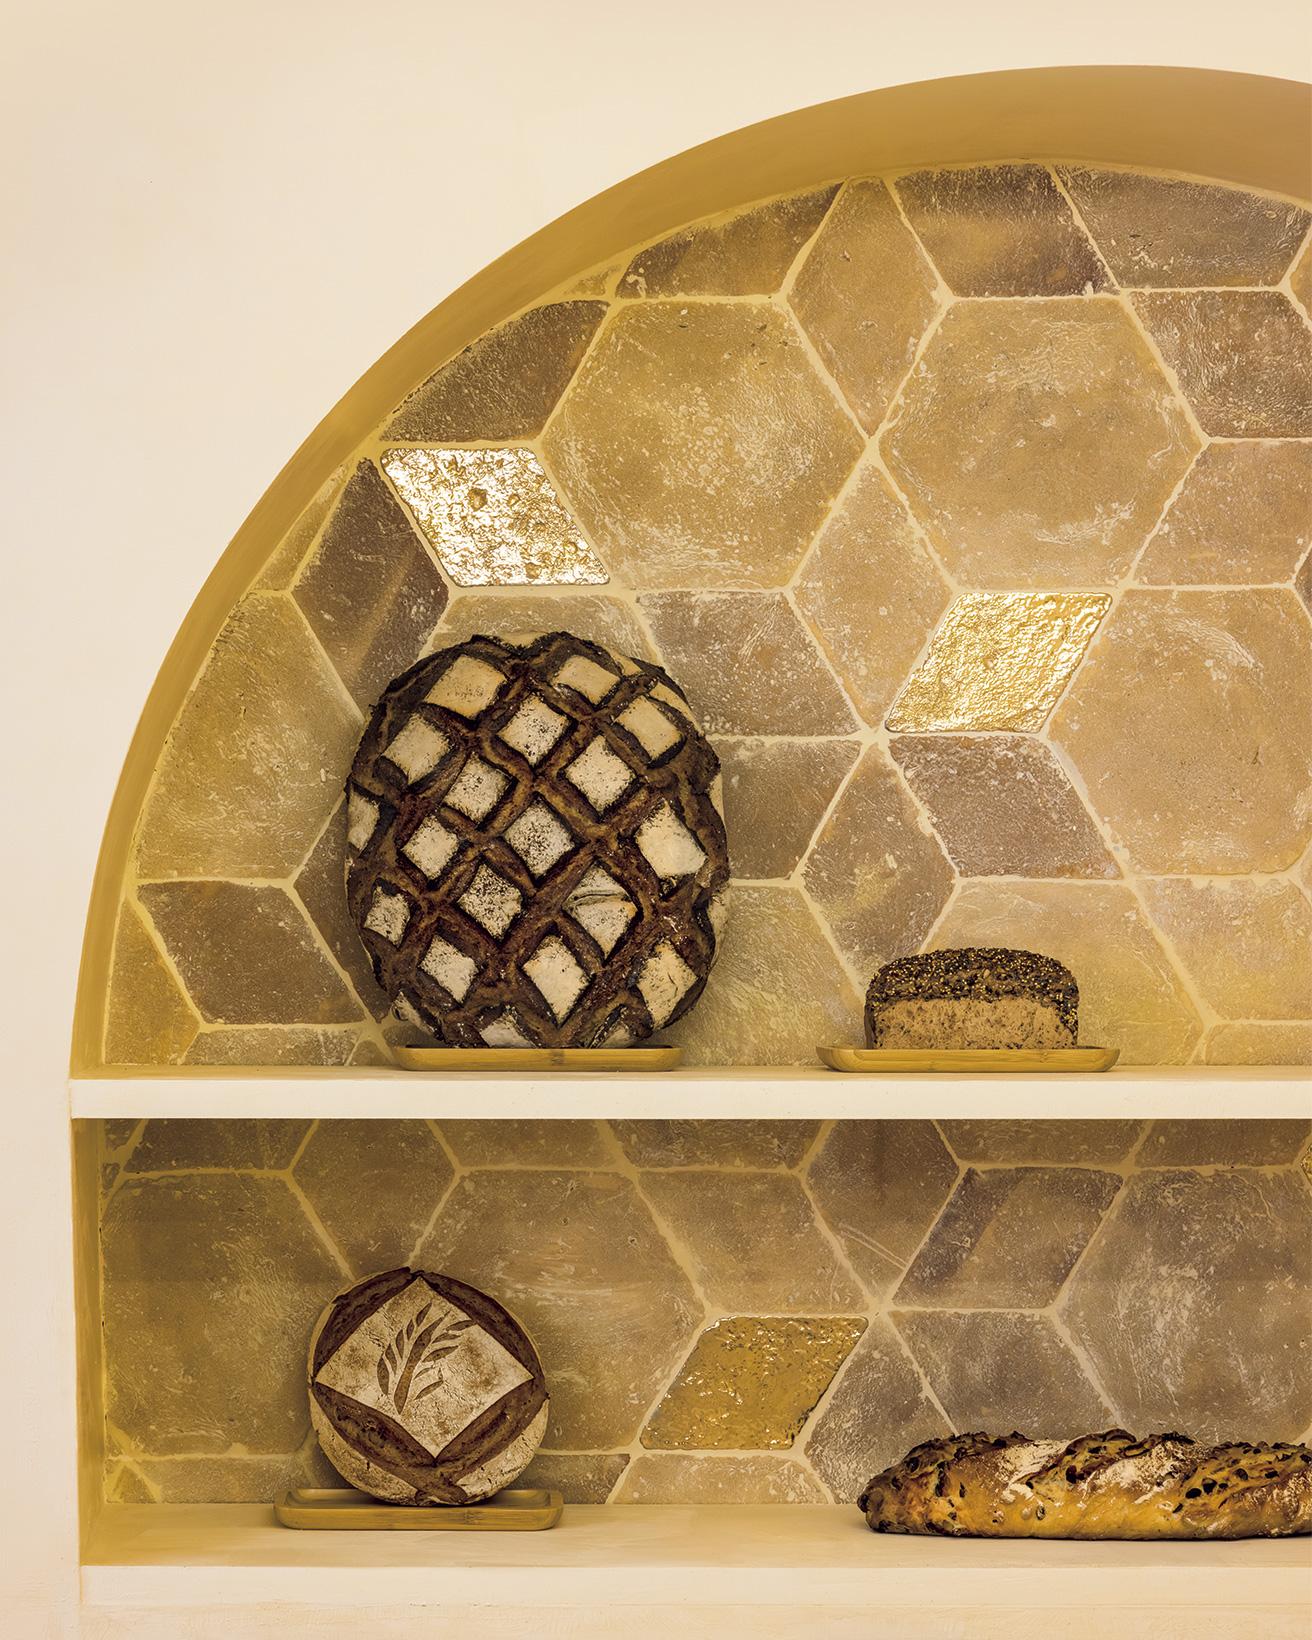 アーチ型陳列棚の内側は石灰や金箔で表面加工したテラコッタタイル。